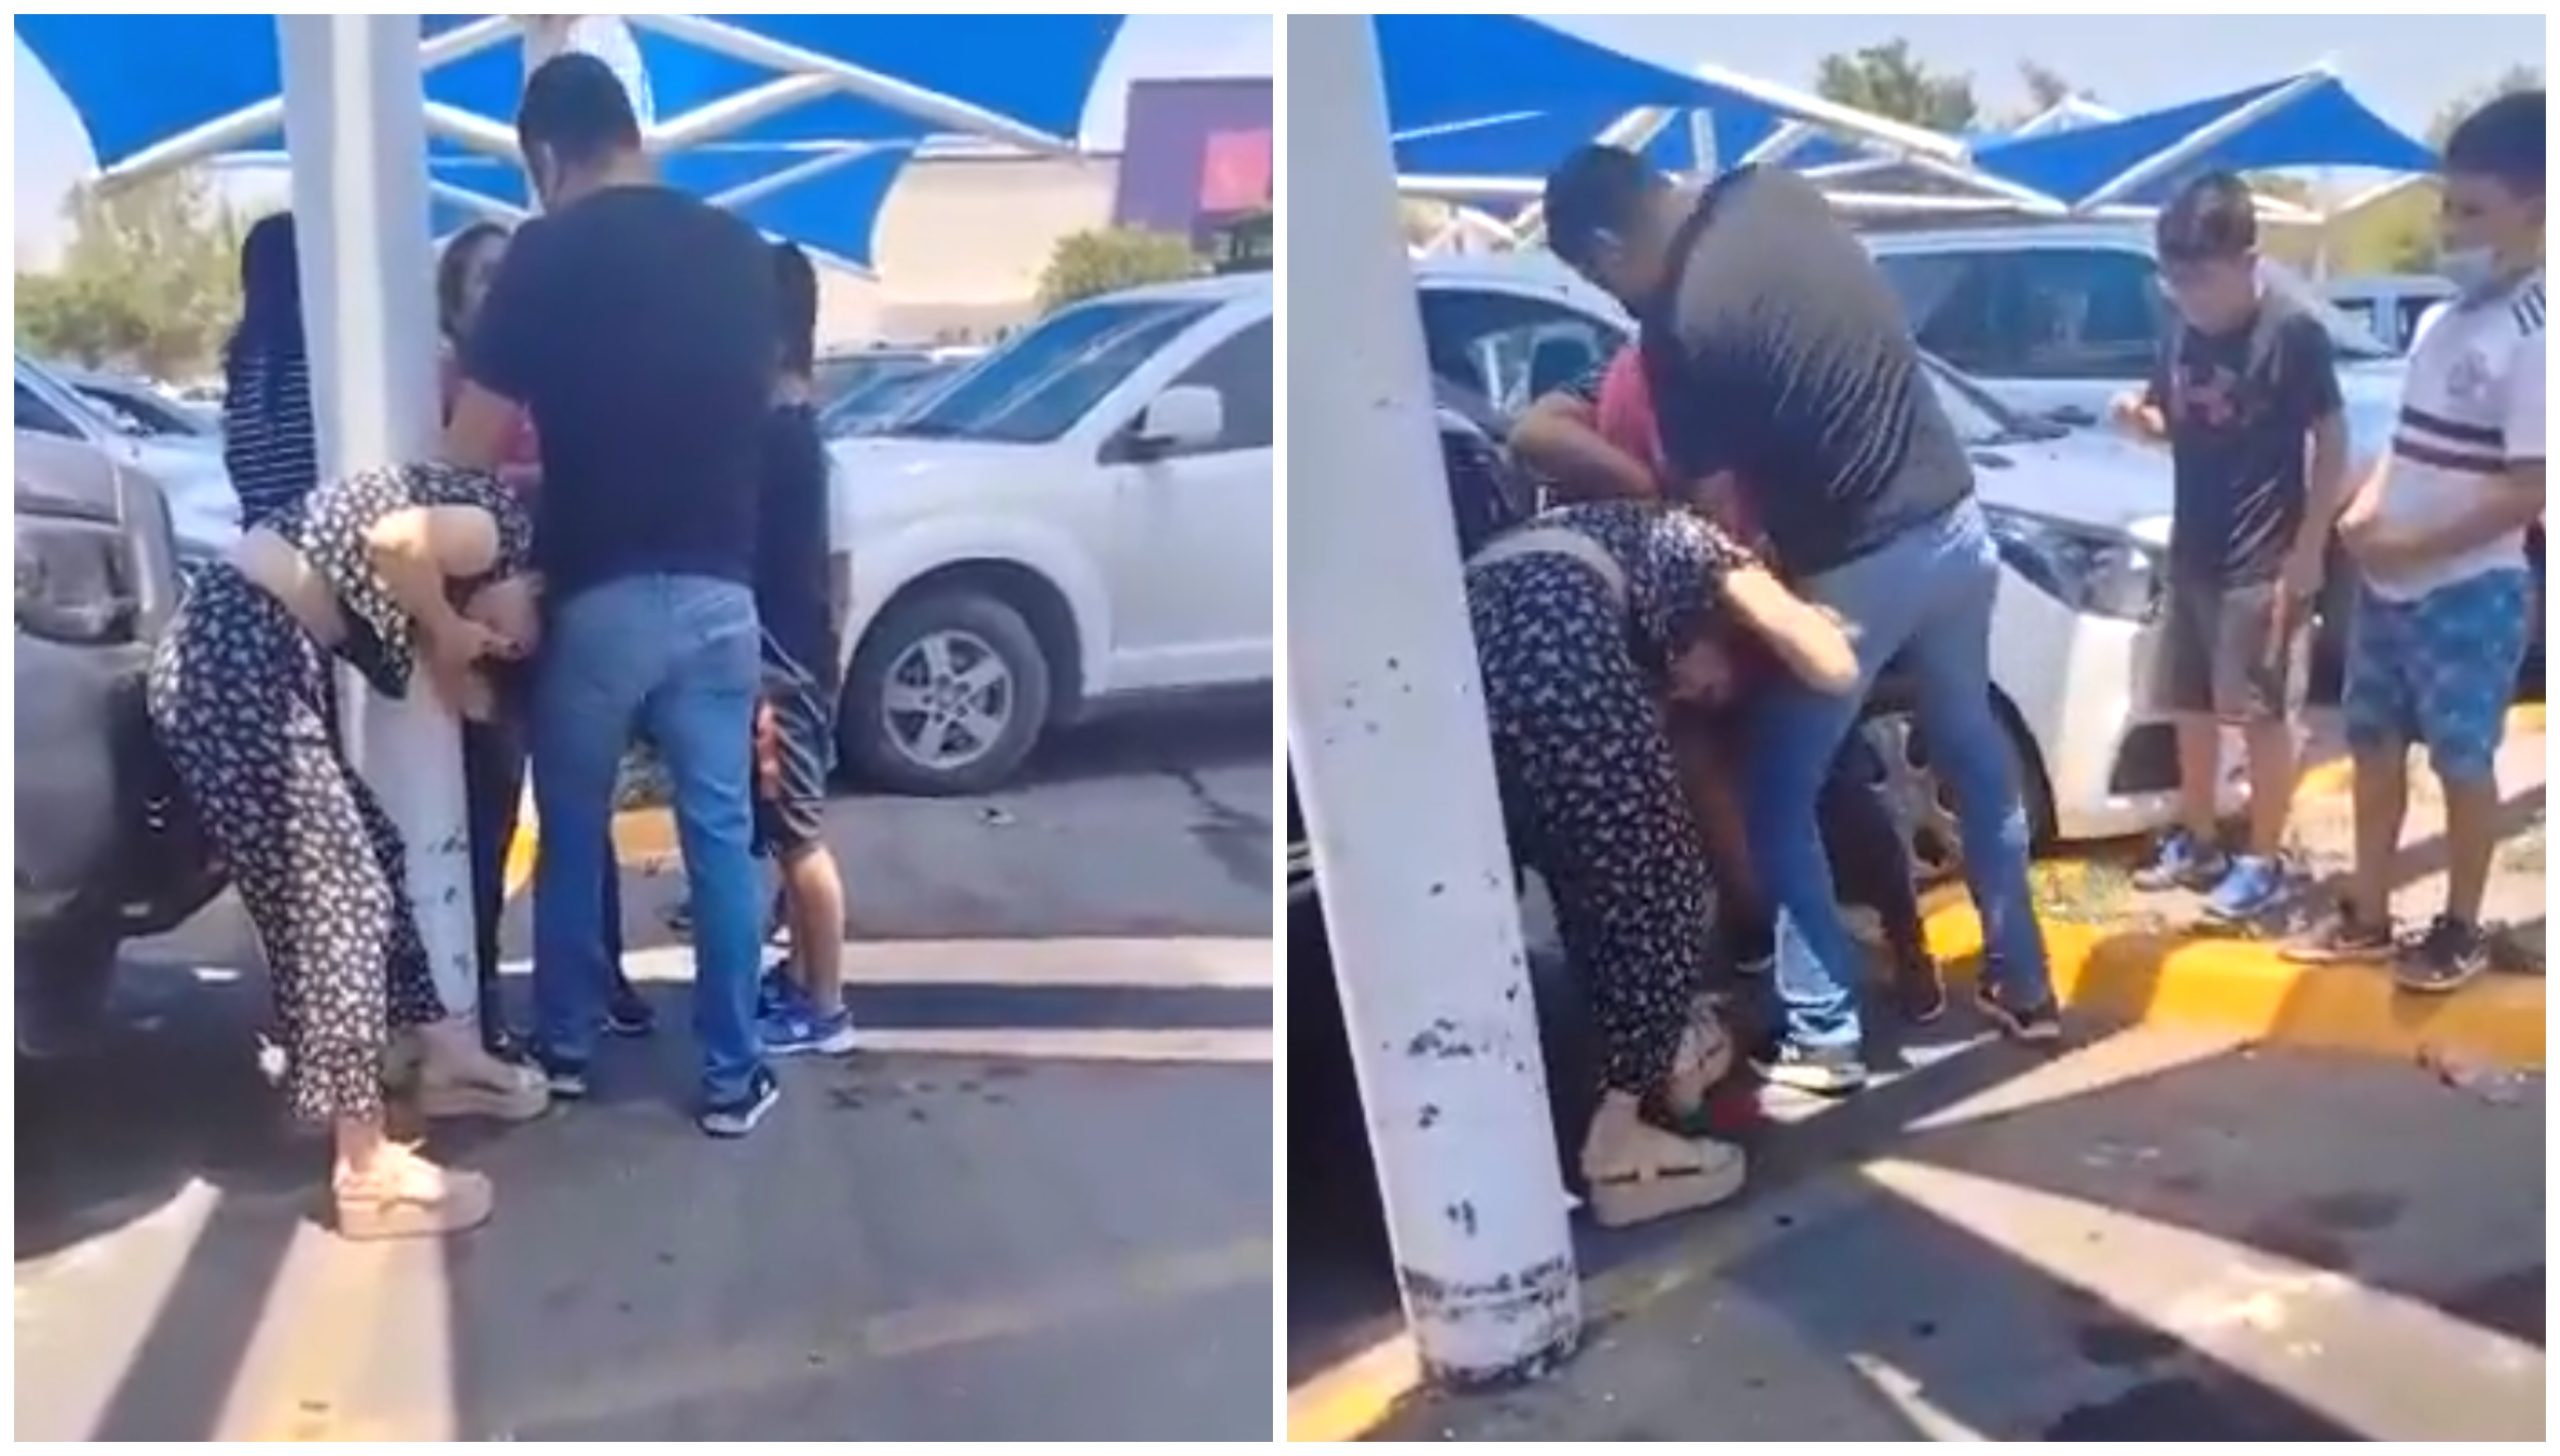  VÍDEO: Mulher flagra marido com amante após ser avisada por amiga no WhatsApp 